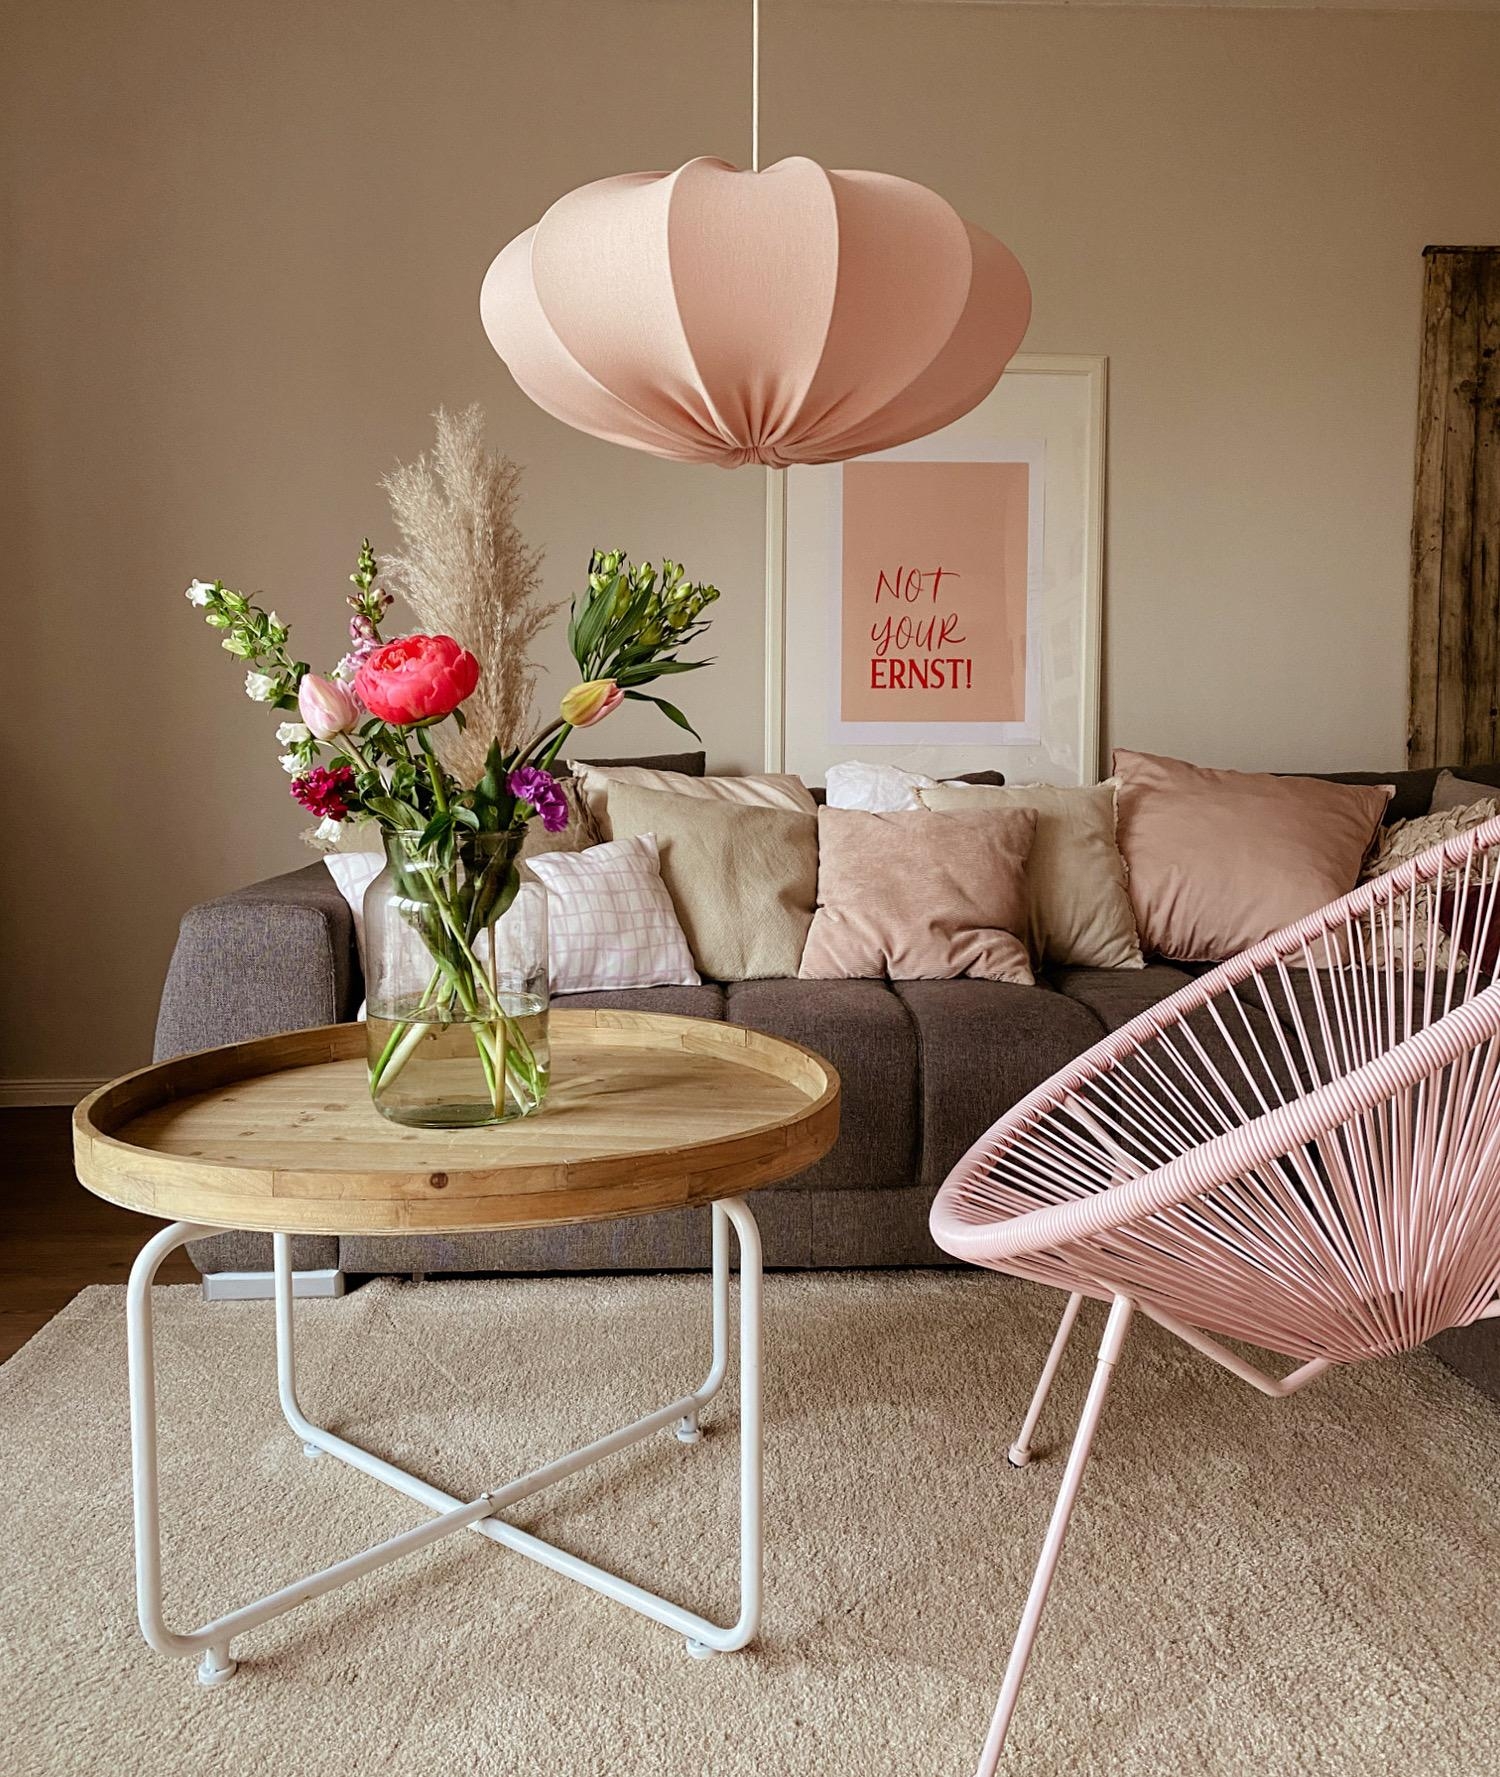 Eine Portion rosa gegen das grau von draußen.
#farbenfroh#wohnzimmer#couchstyle#freshflowers#ichliebs